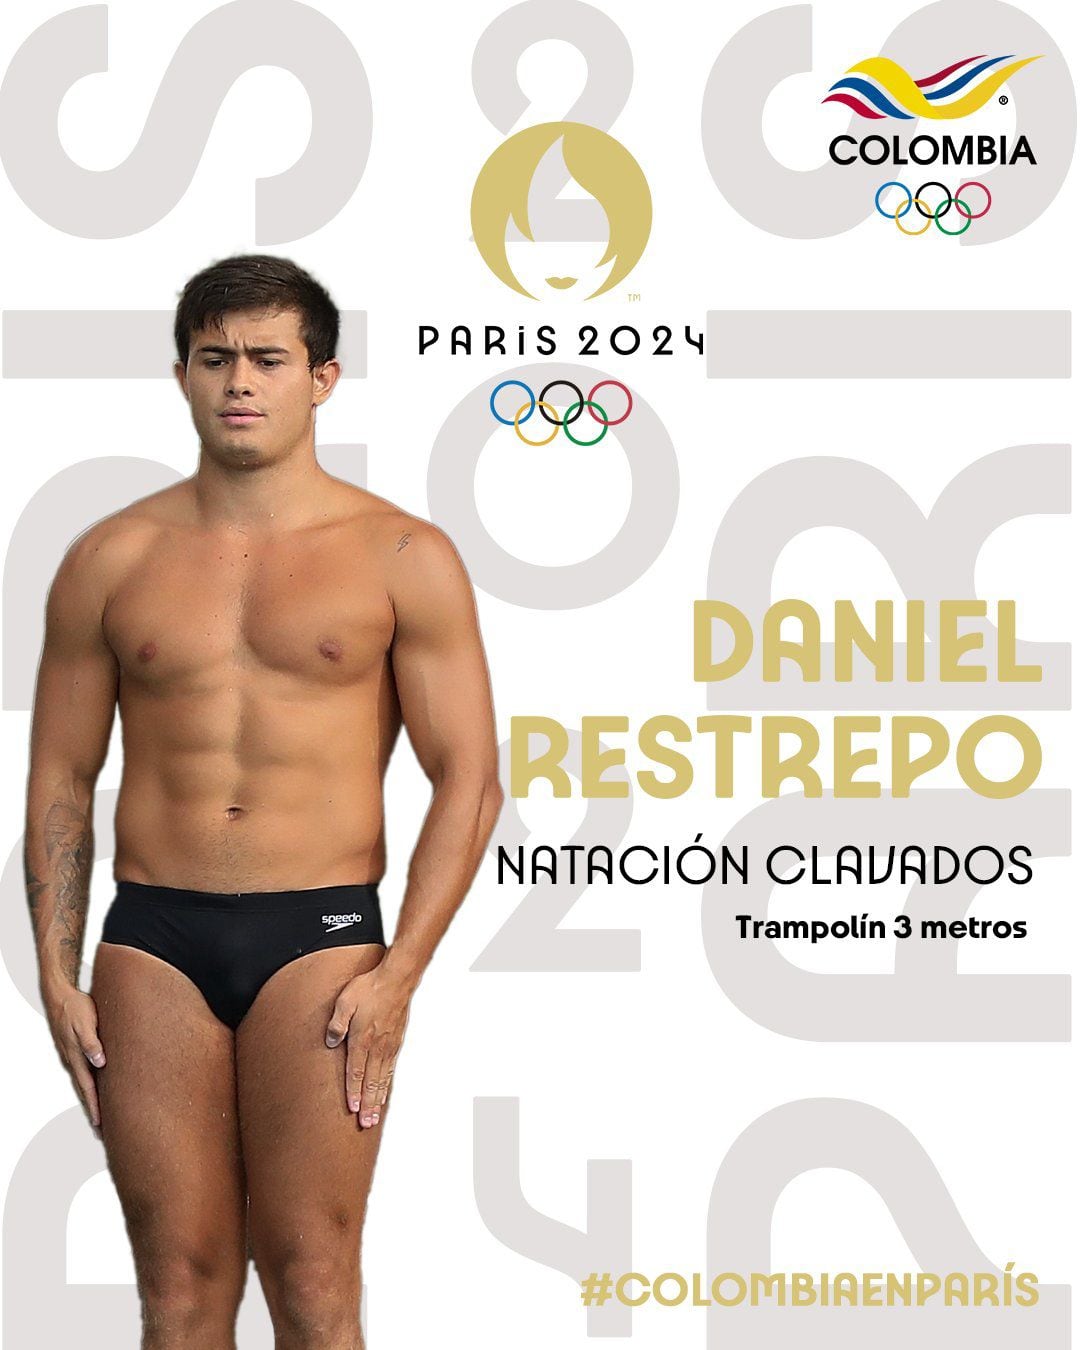 Daniel Restrepo sacó boleto para participar en los Juegos Olímpicos de París 2024